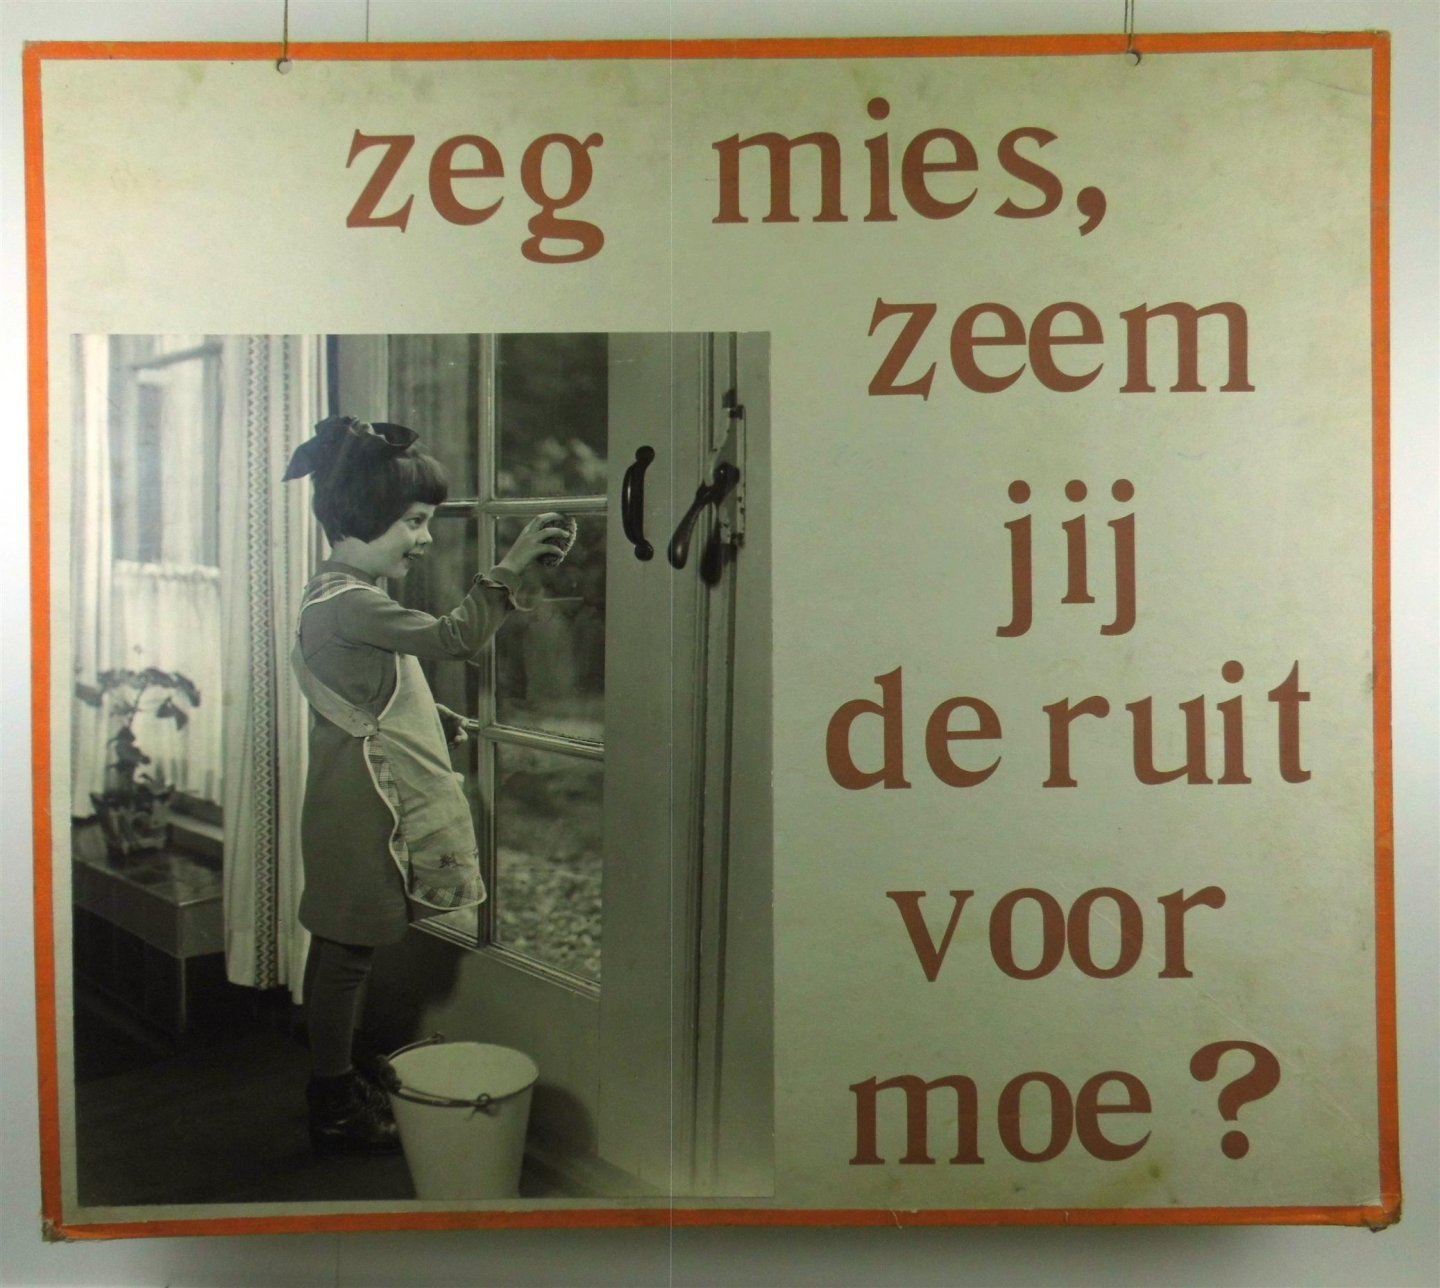 Mol, B., FOTO M.A.J. van Bommel - ( SCHOOLPLAAT ) . LEES MEE . Zeg Mies, zeem jij de ruit voor moe?